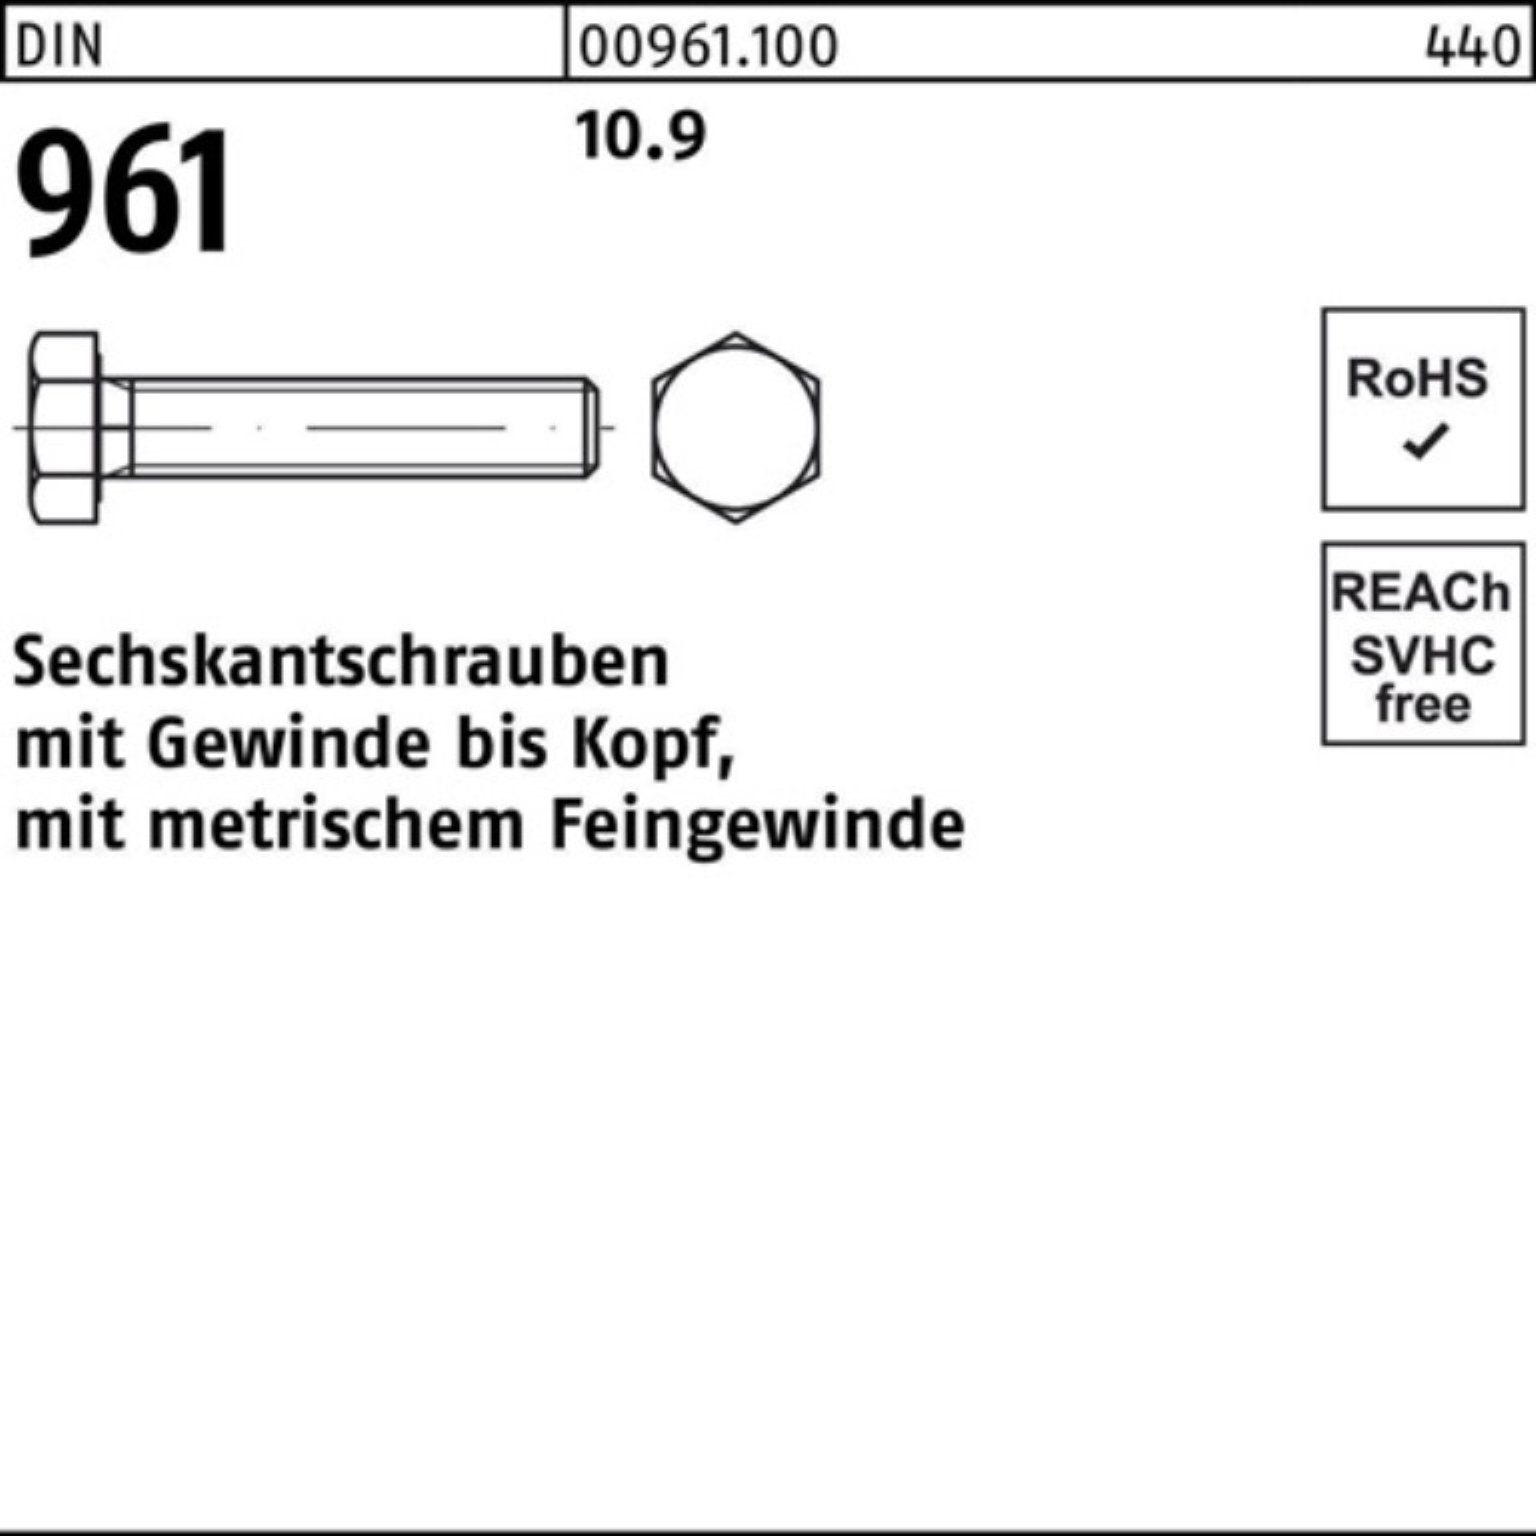 Reyher Sechskantschraube 100er Pack Sechskantschraube Stück 10.9 VG 961 DIN M24x1,5x DIN 25 55